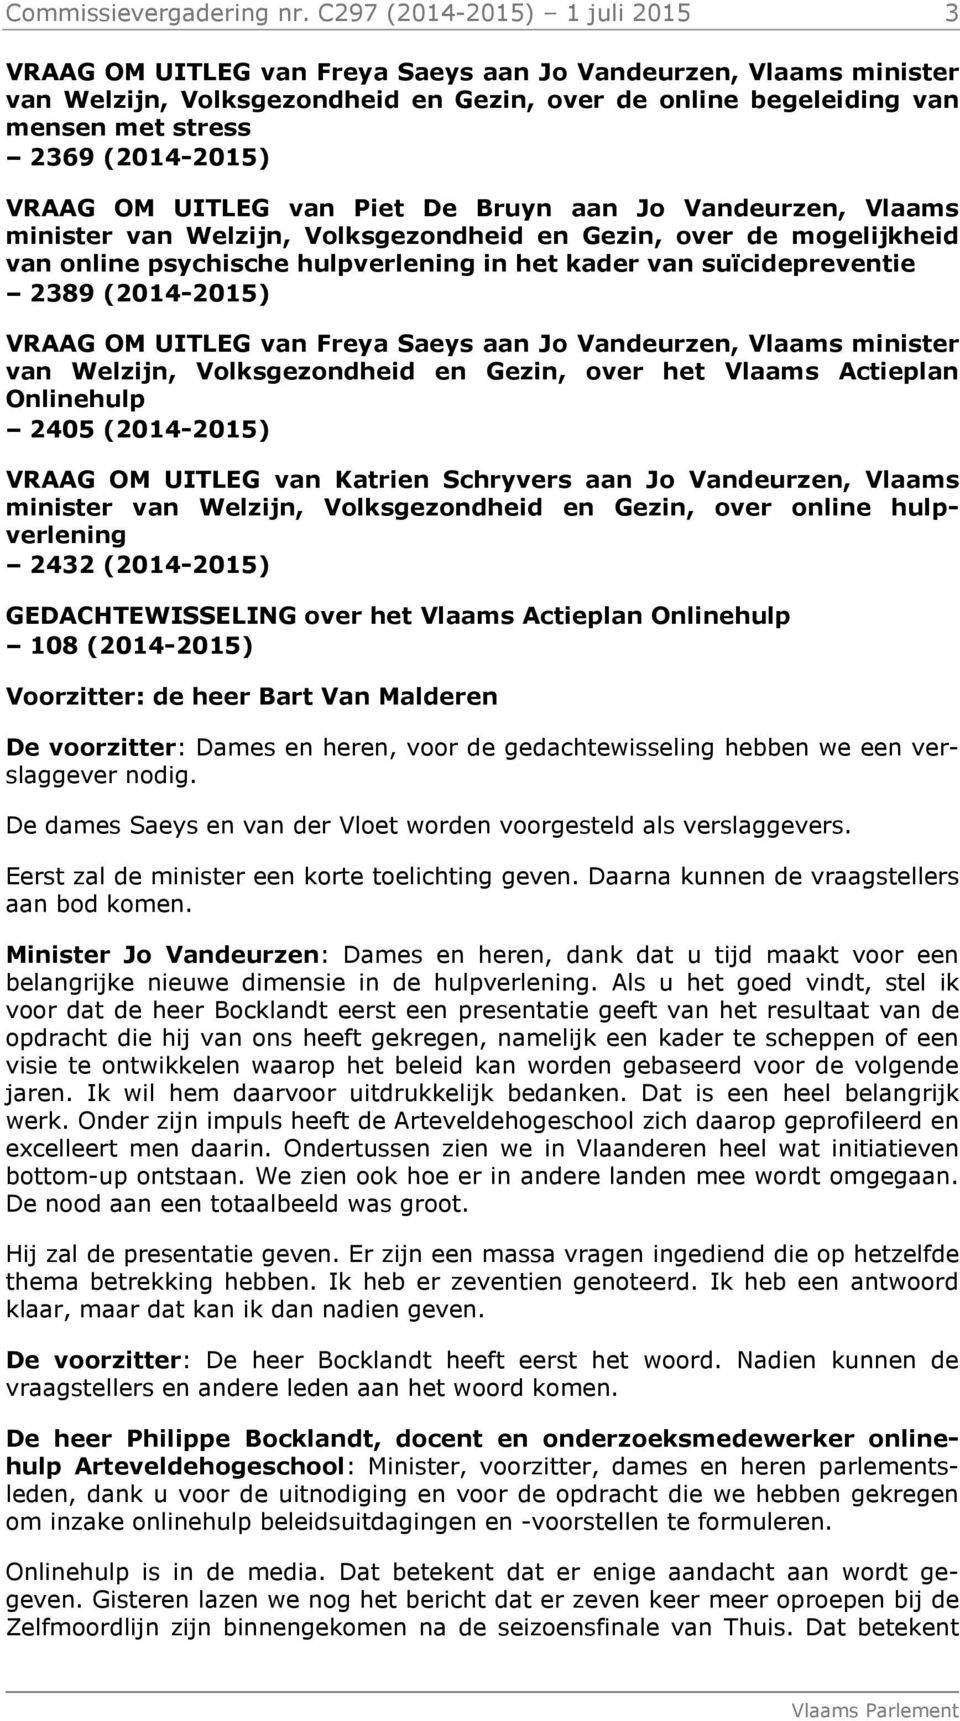 (2014-2015) VRAAG OM UITLEG van Piet De Bruyn aan Jo Vandeurzen, Vlaams minister van Welzijn, Volksgezondheid en Gezin, over de mogelijkheid van online psychische hulpverlening in het kader van